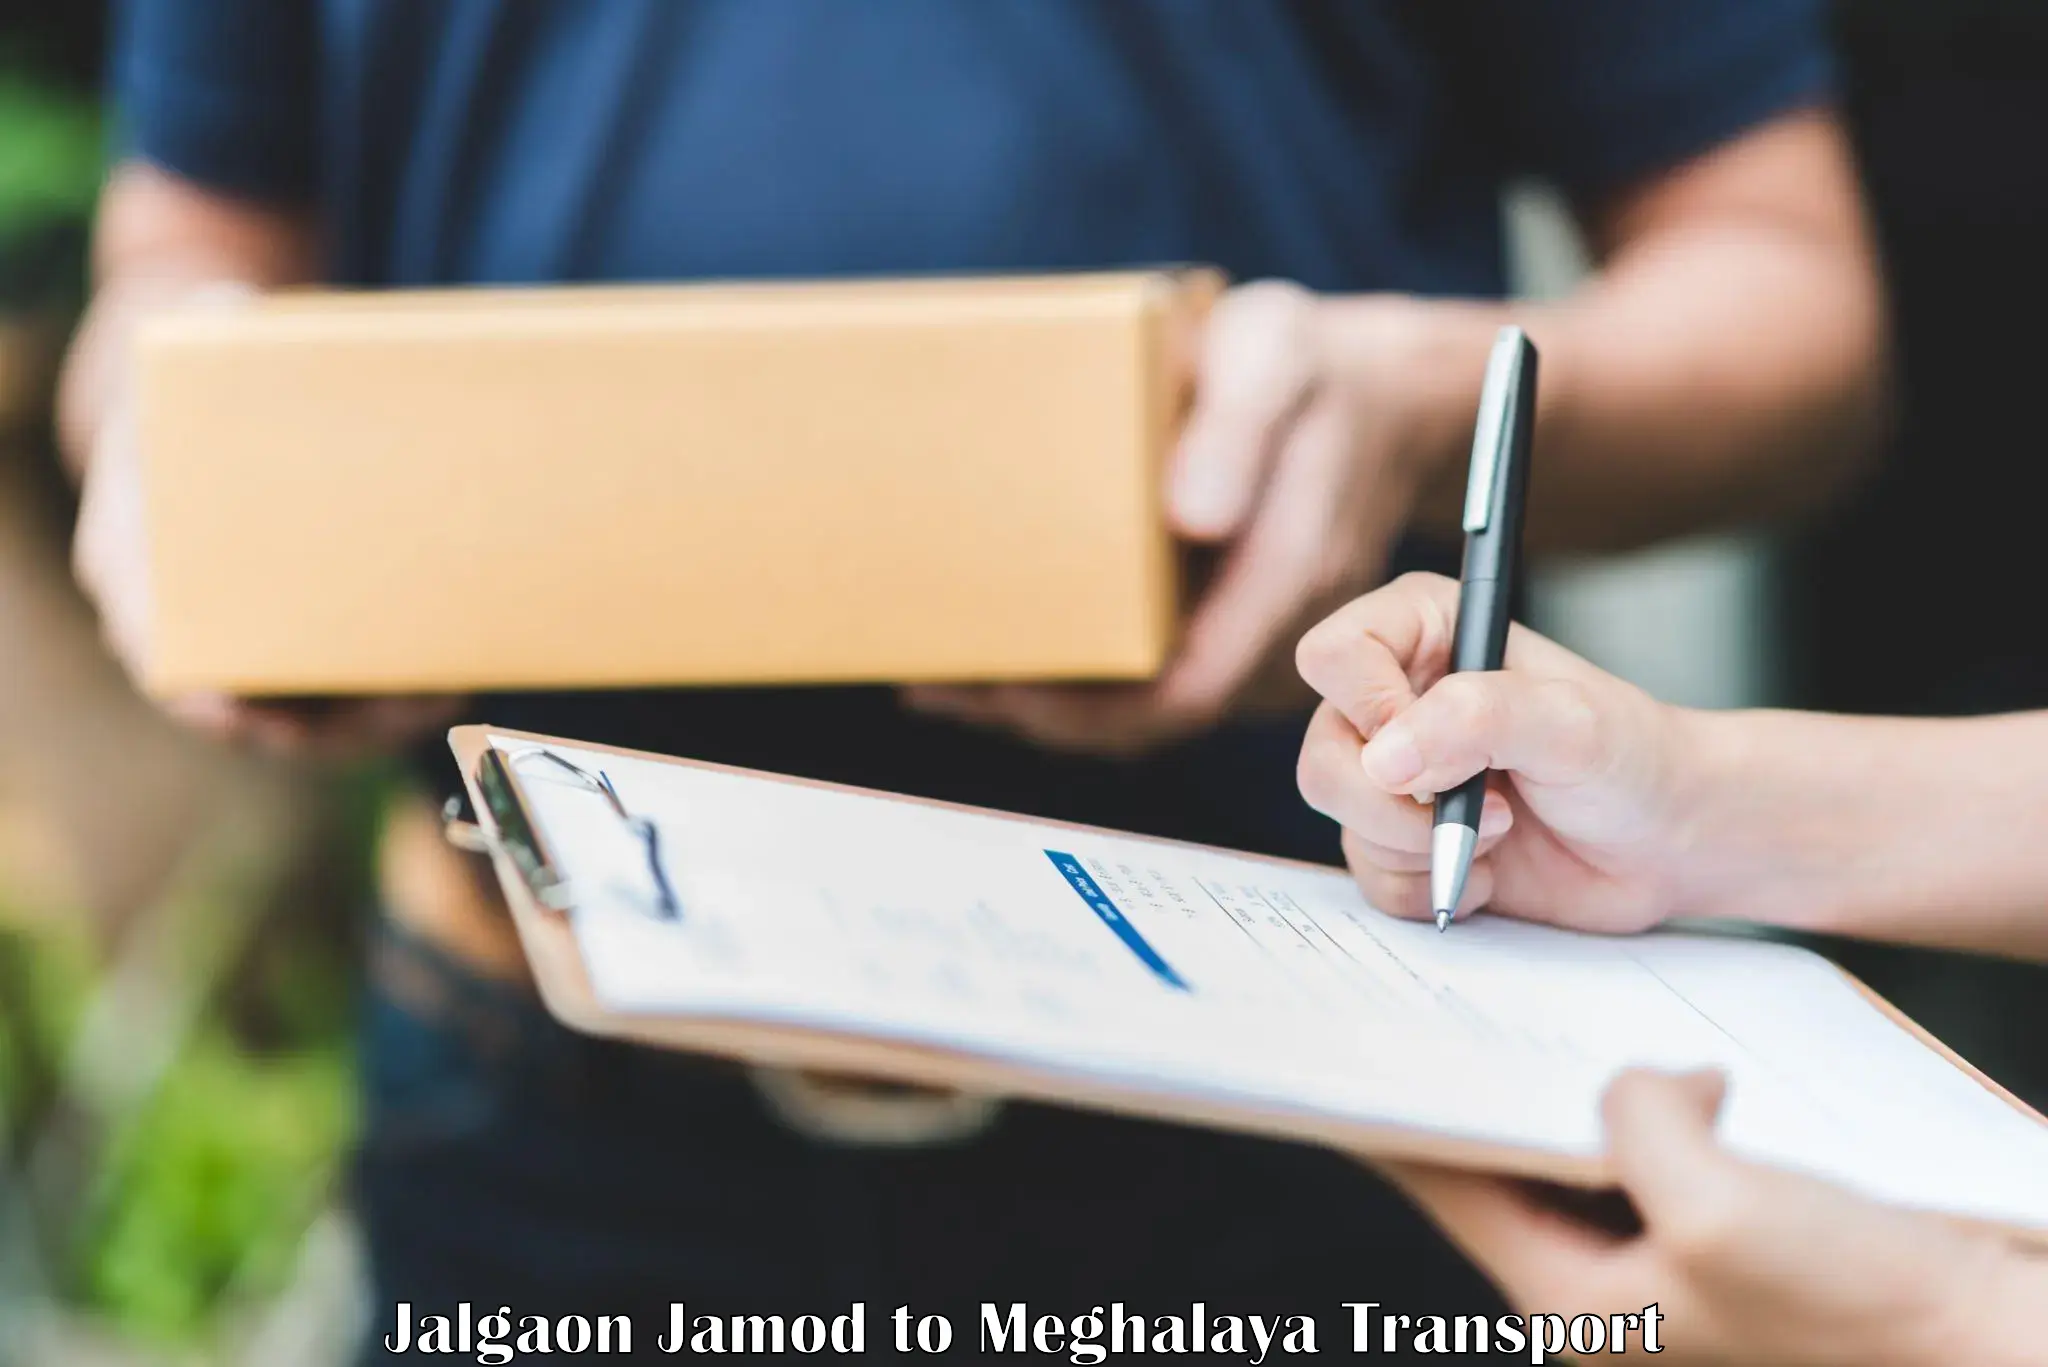 Nationwide transport services Jalgaon Jamod to Meghalaya